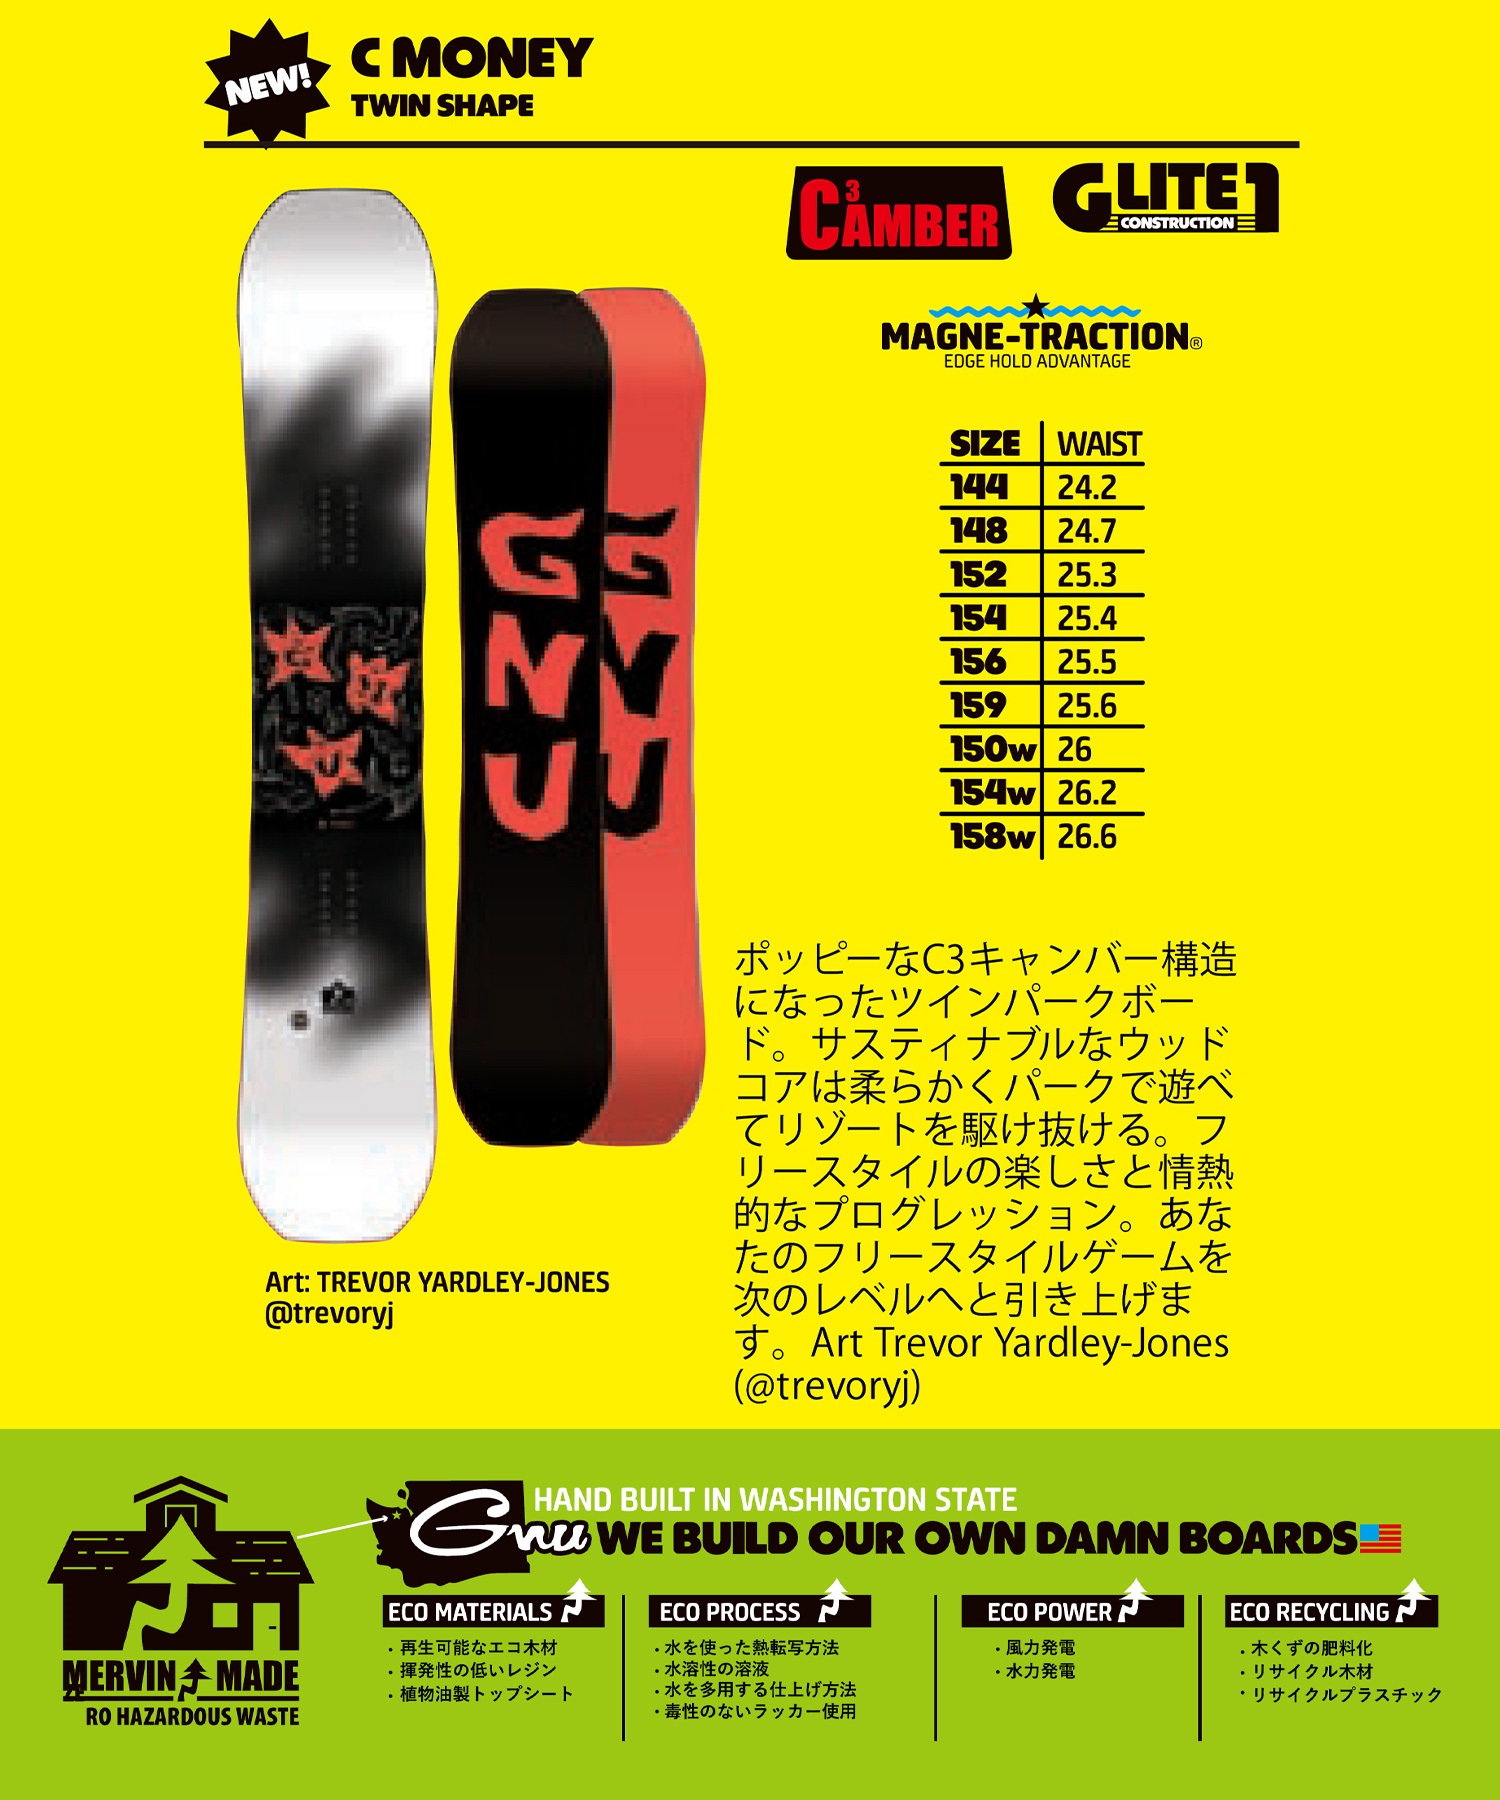 【早期購入】GNU グヌー スノーボード 板 メンズ C MONEY ムラサキスポーツ 24-25モデル LL A26(WTBK-144cm)